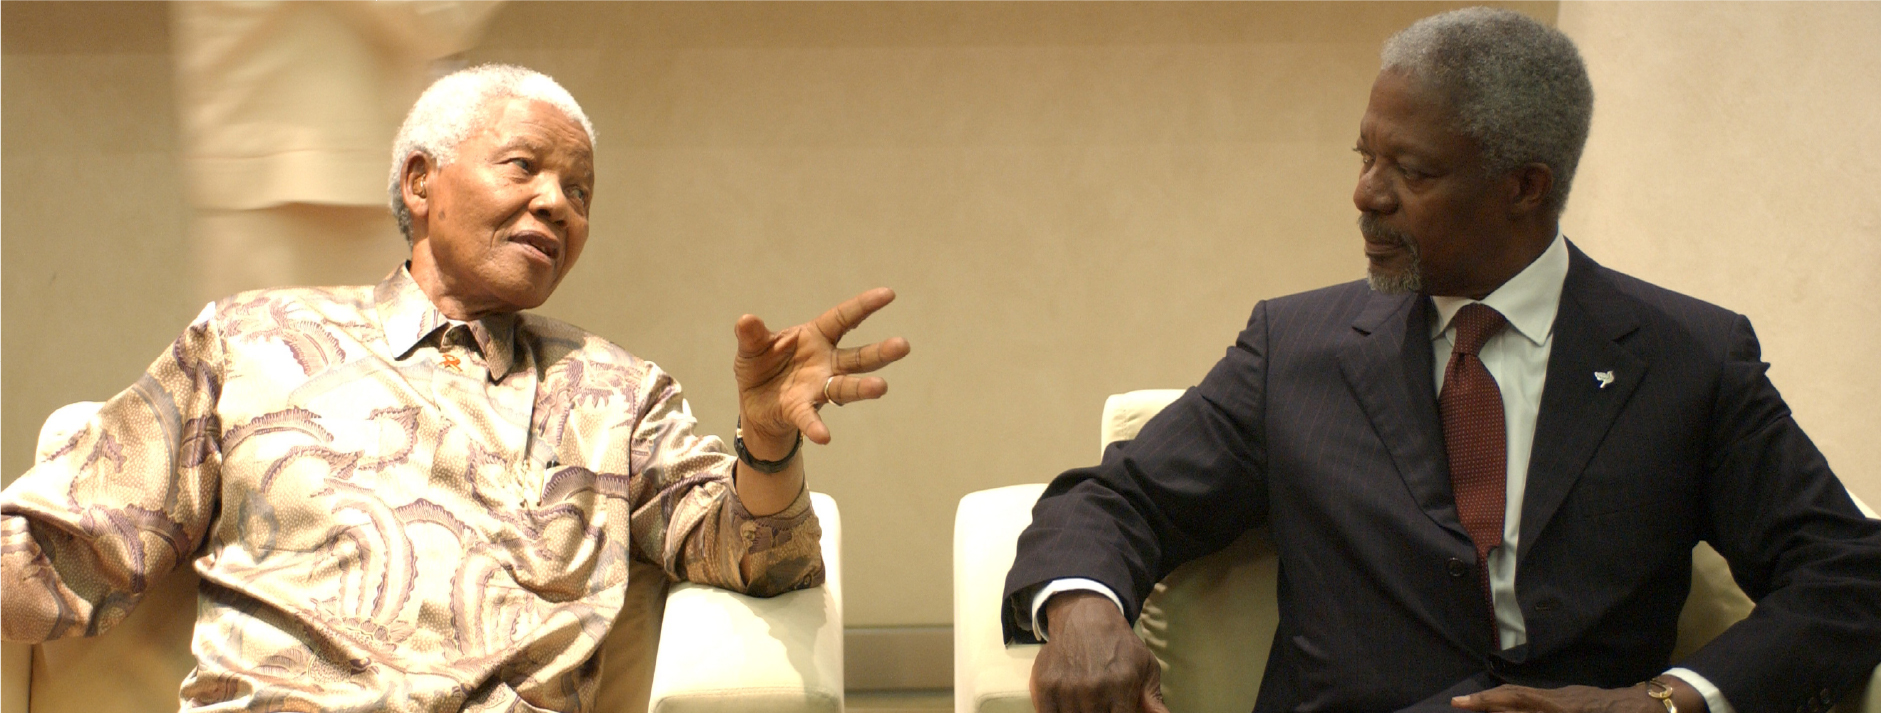 الأمين العام للأمم المتحدة كوفي عنان (على اليمين) مع نيلسون مانديلا في مركز ساندتون للمؤتمرات أثناء القمة العالمية 